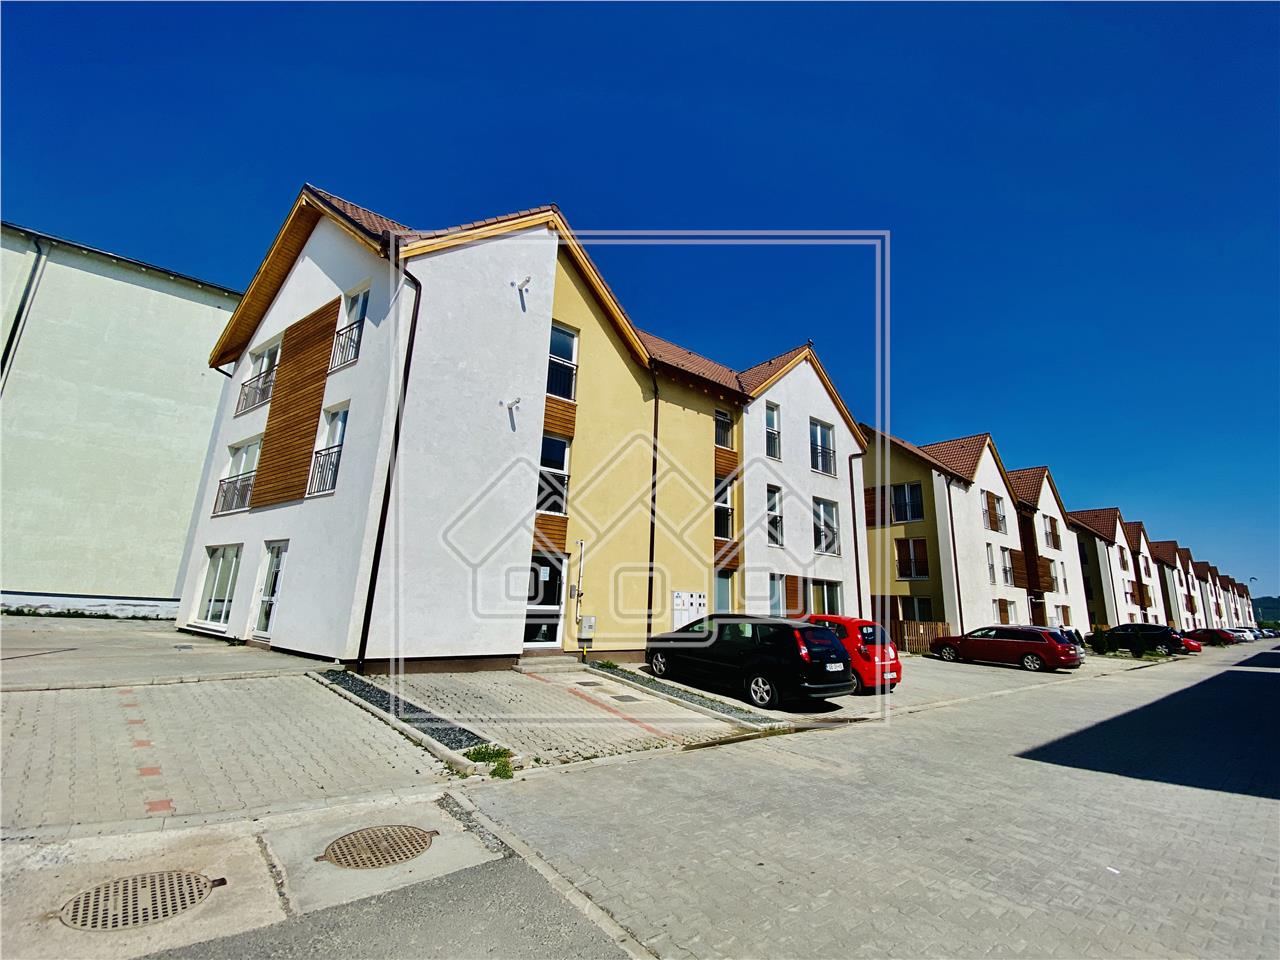 Apartament de vanzare in Sibiu - 51 mp utili - finisat la cheie